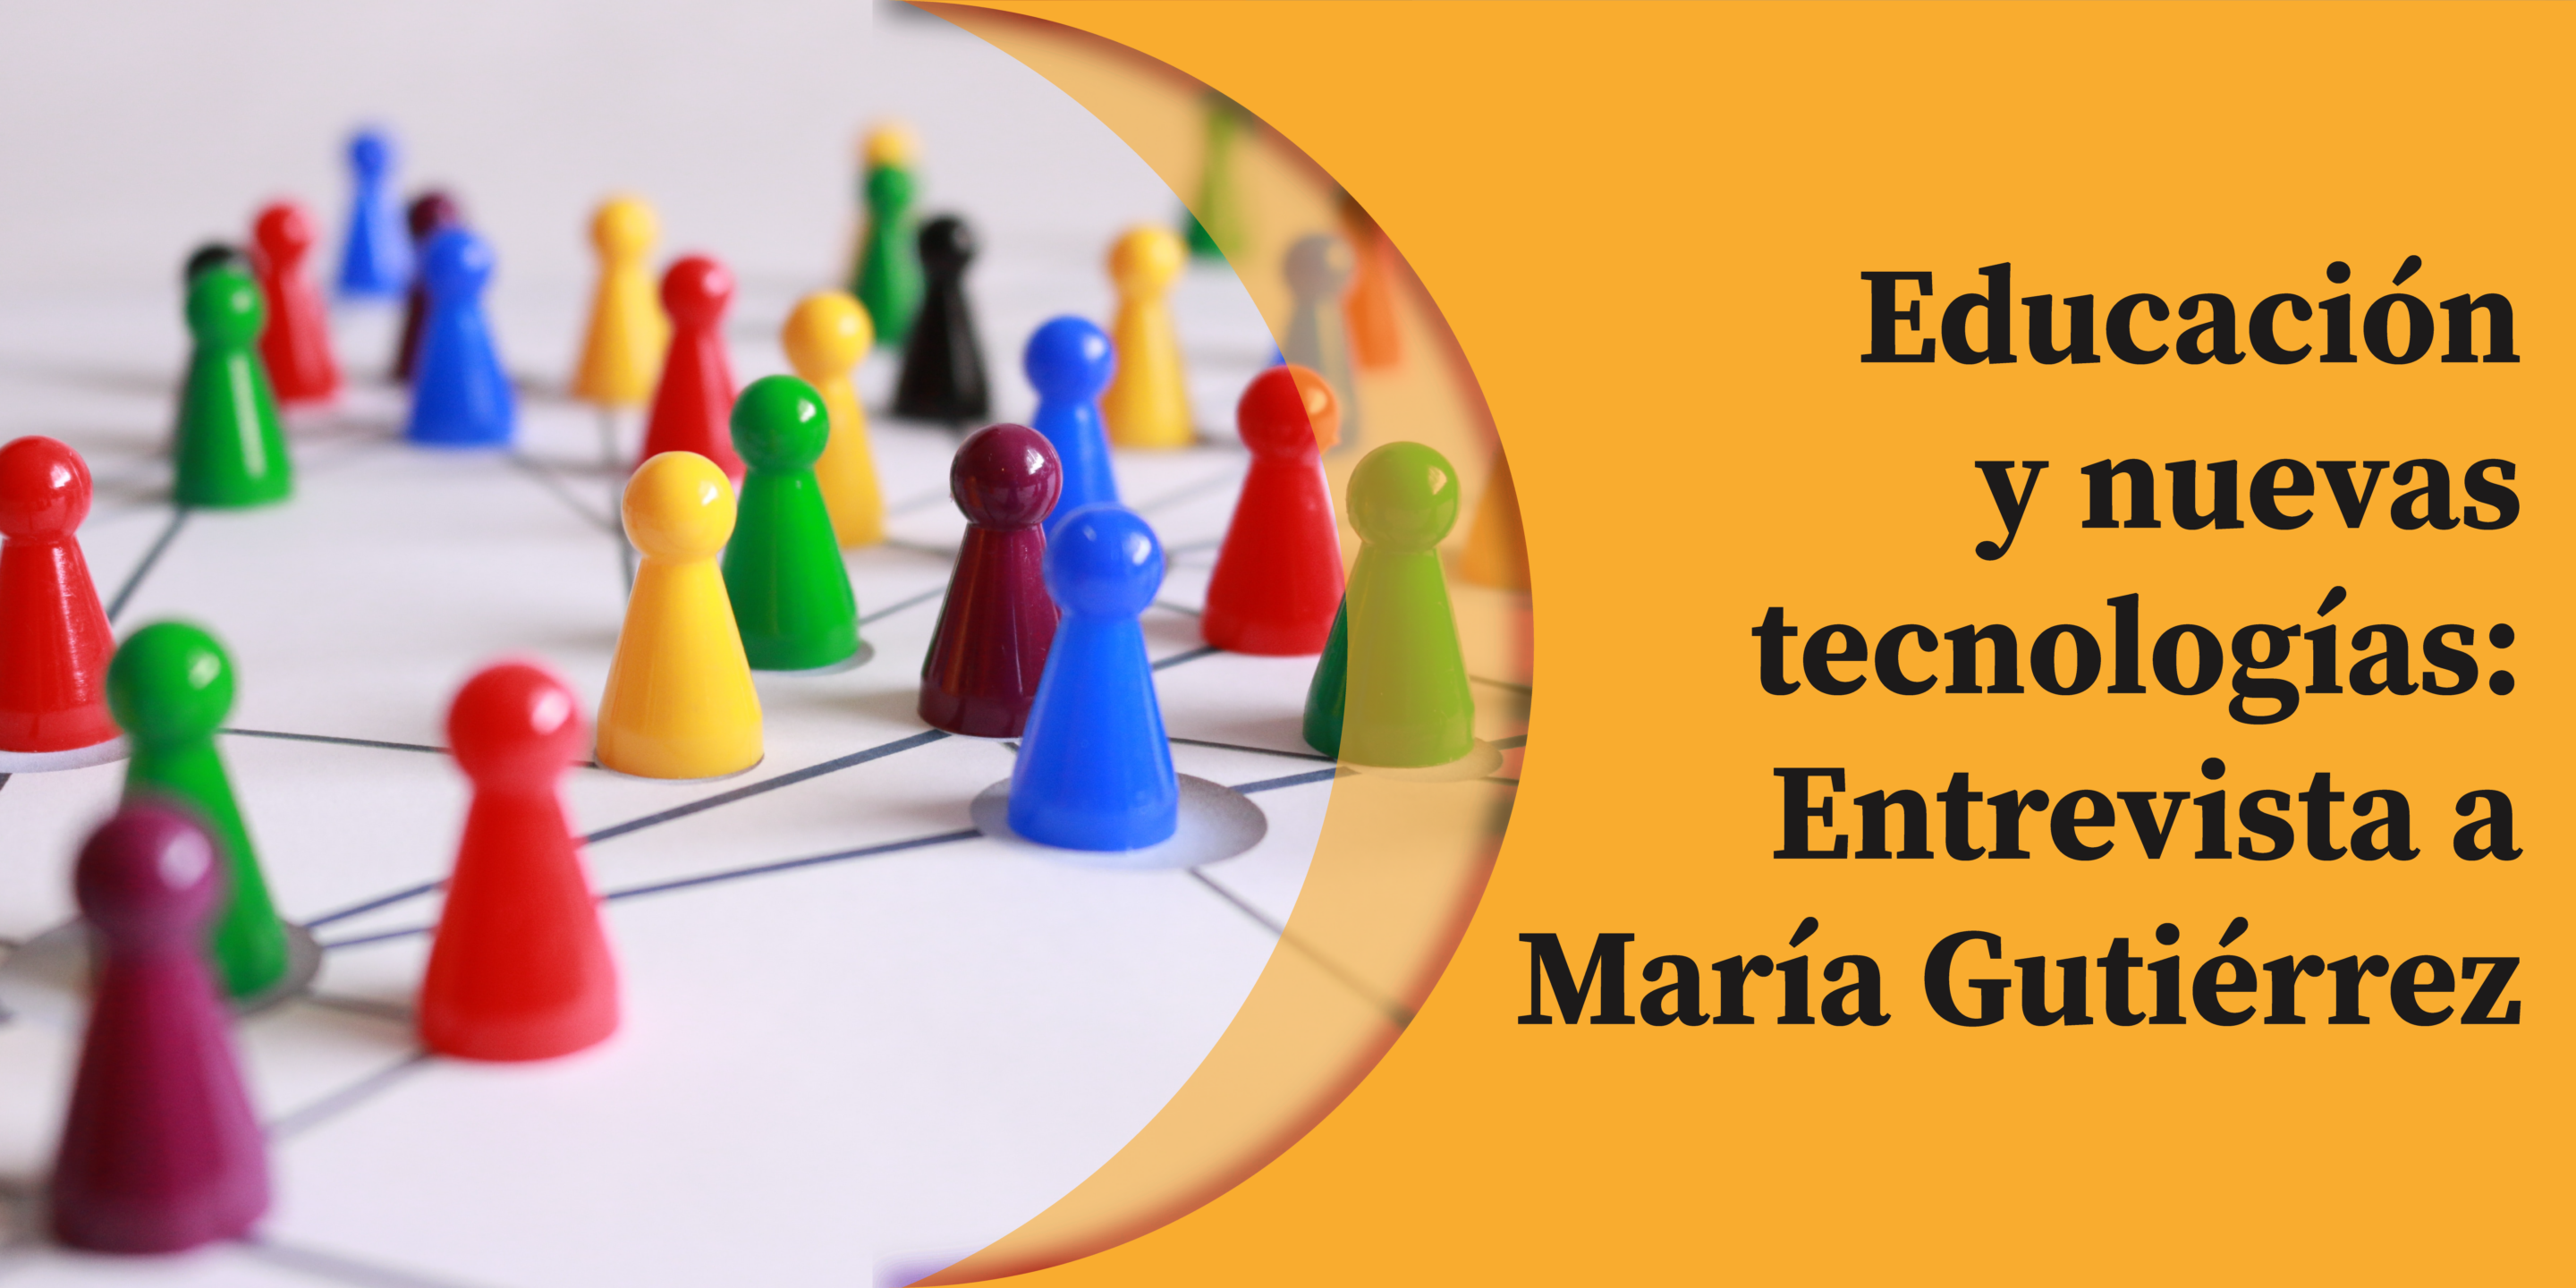 Educación y tecnología: Entrevista a María Gutiérrez